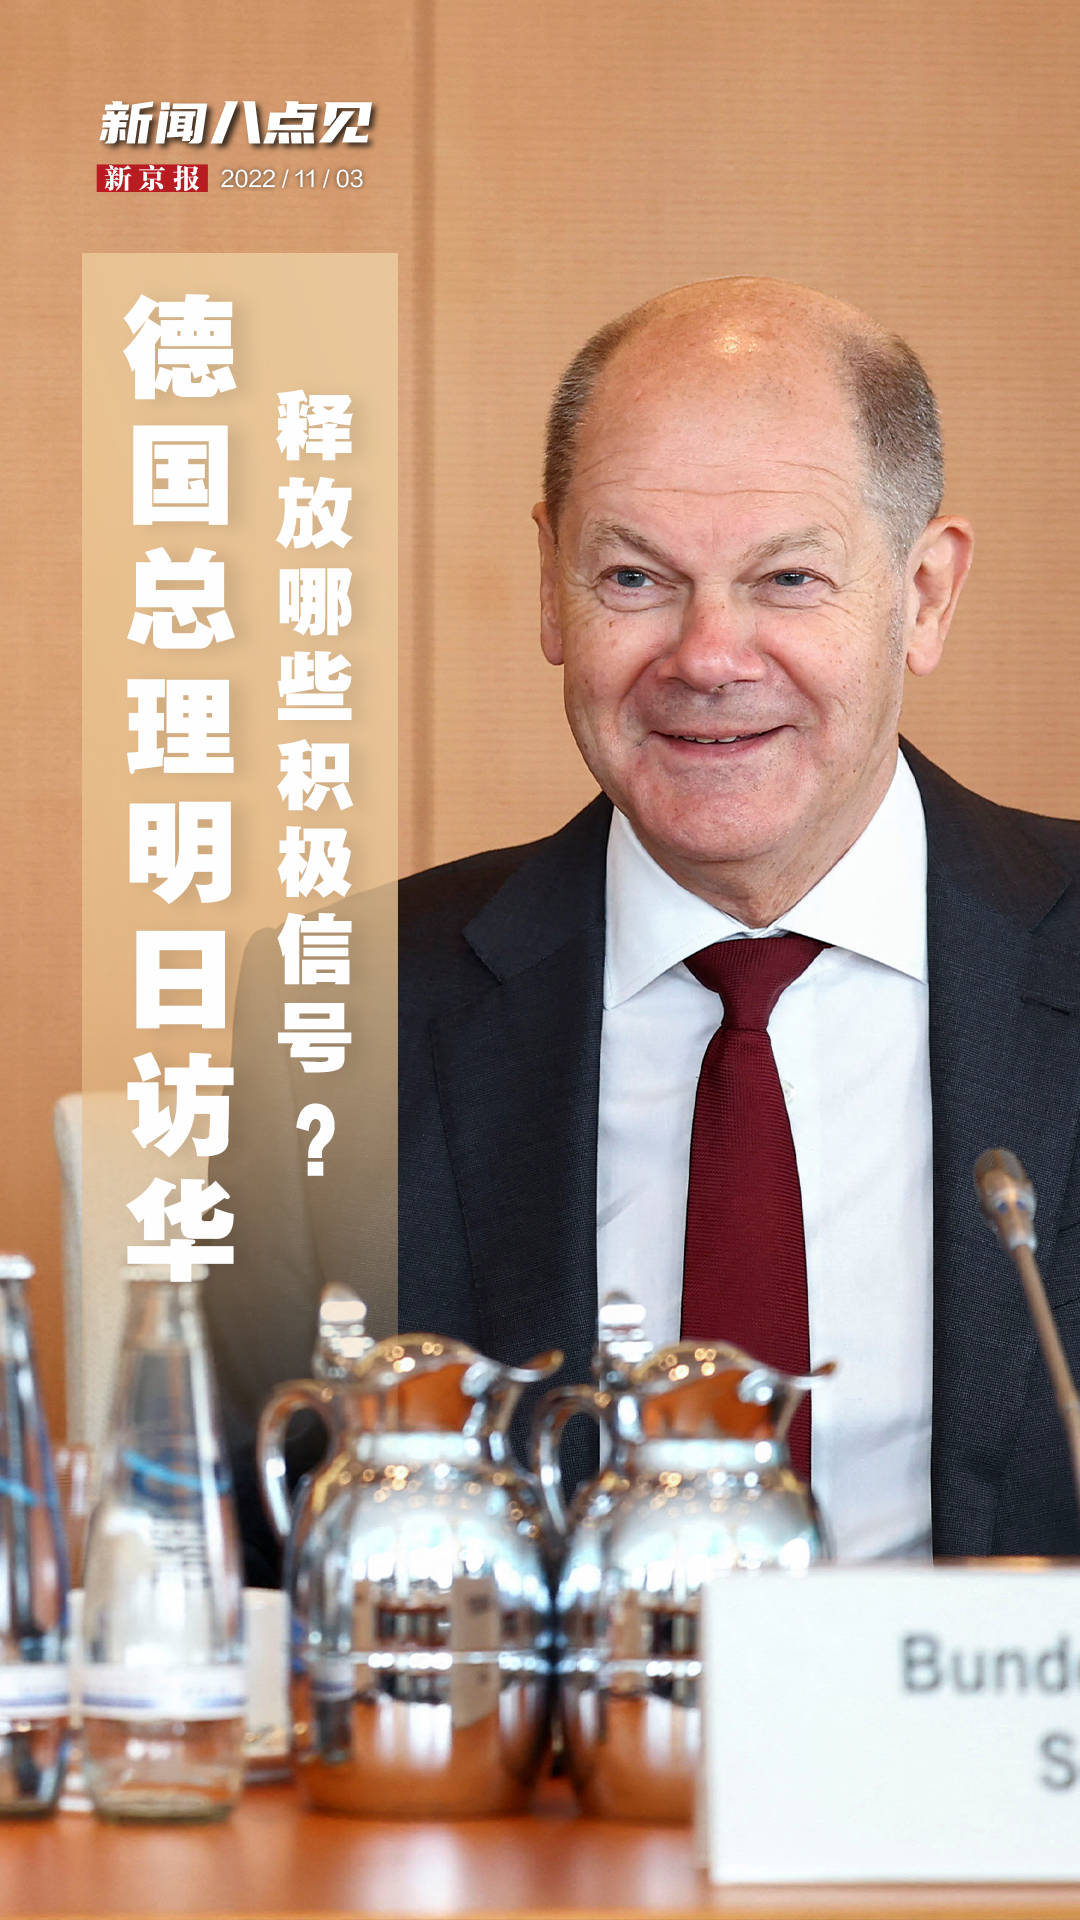 德国总理舒尔茨近日表示将访华 中国外交部回应